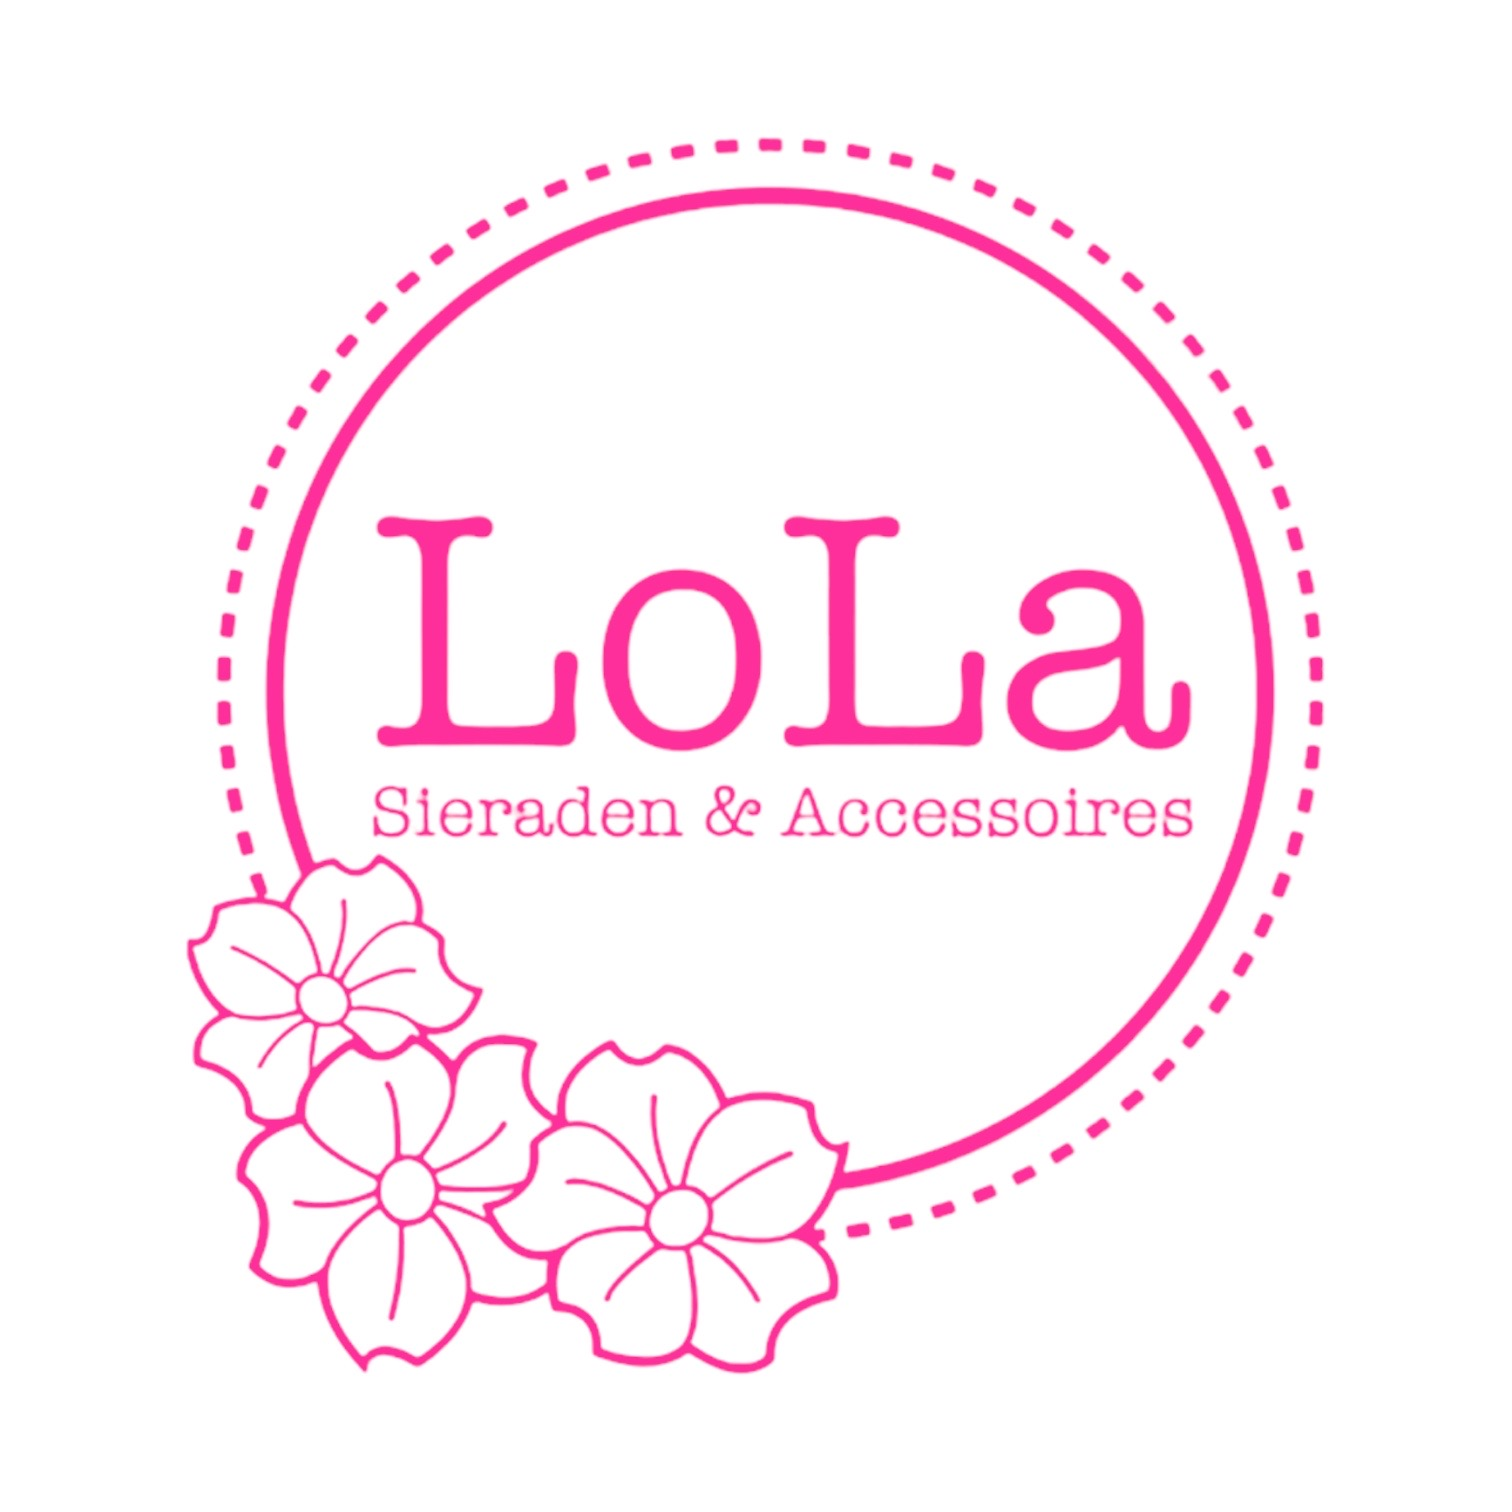 Welkom bij LoLa Sieraden & Accessoires